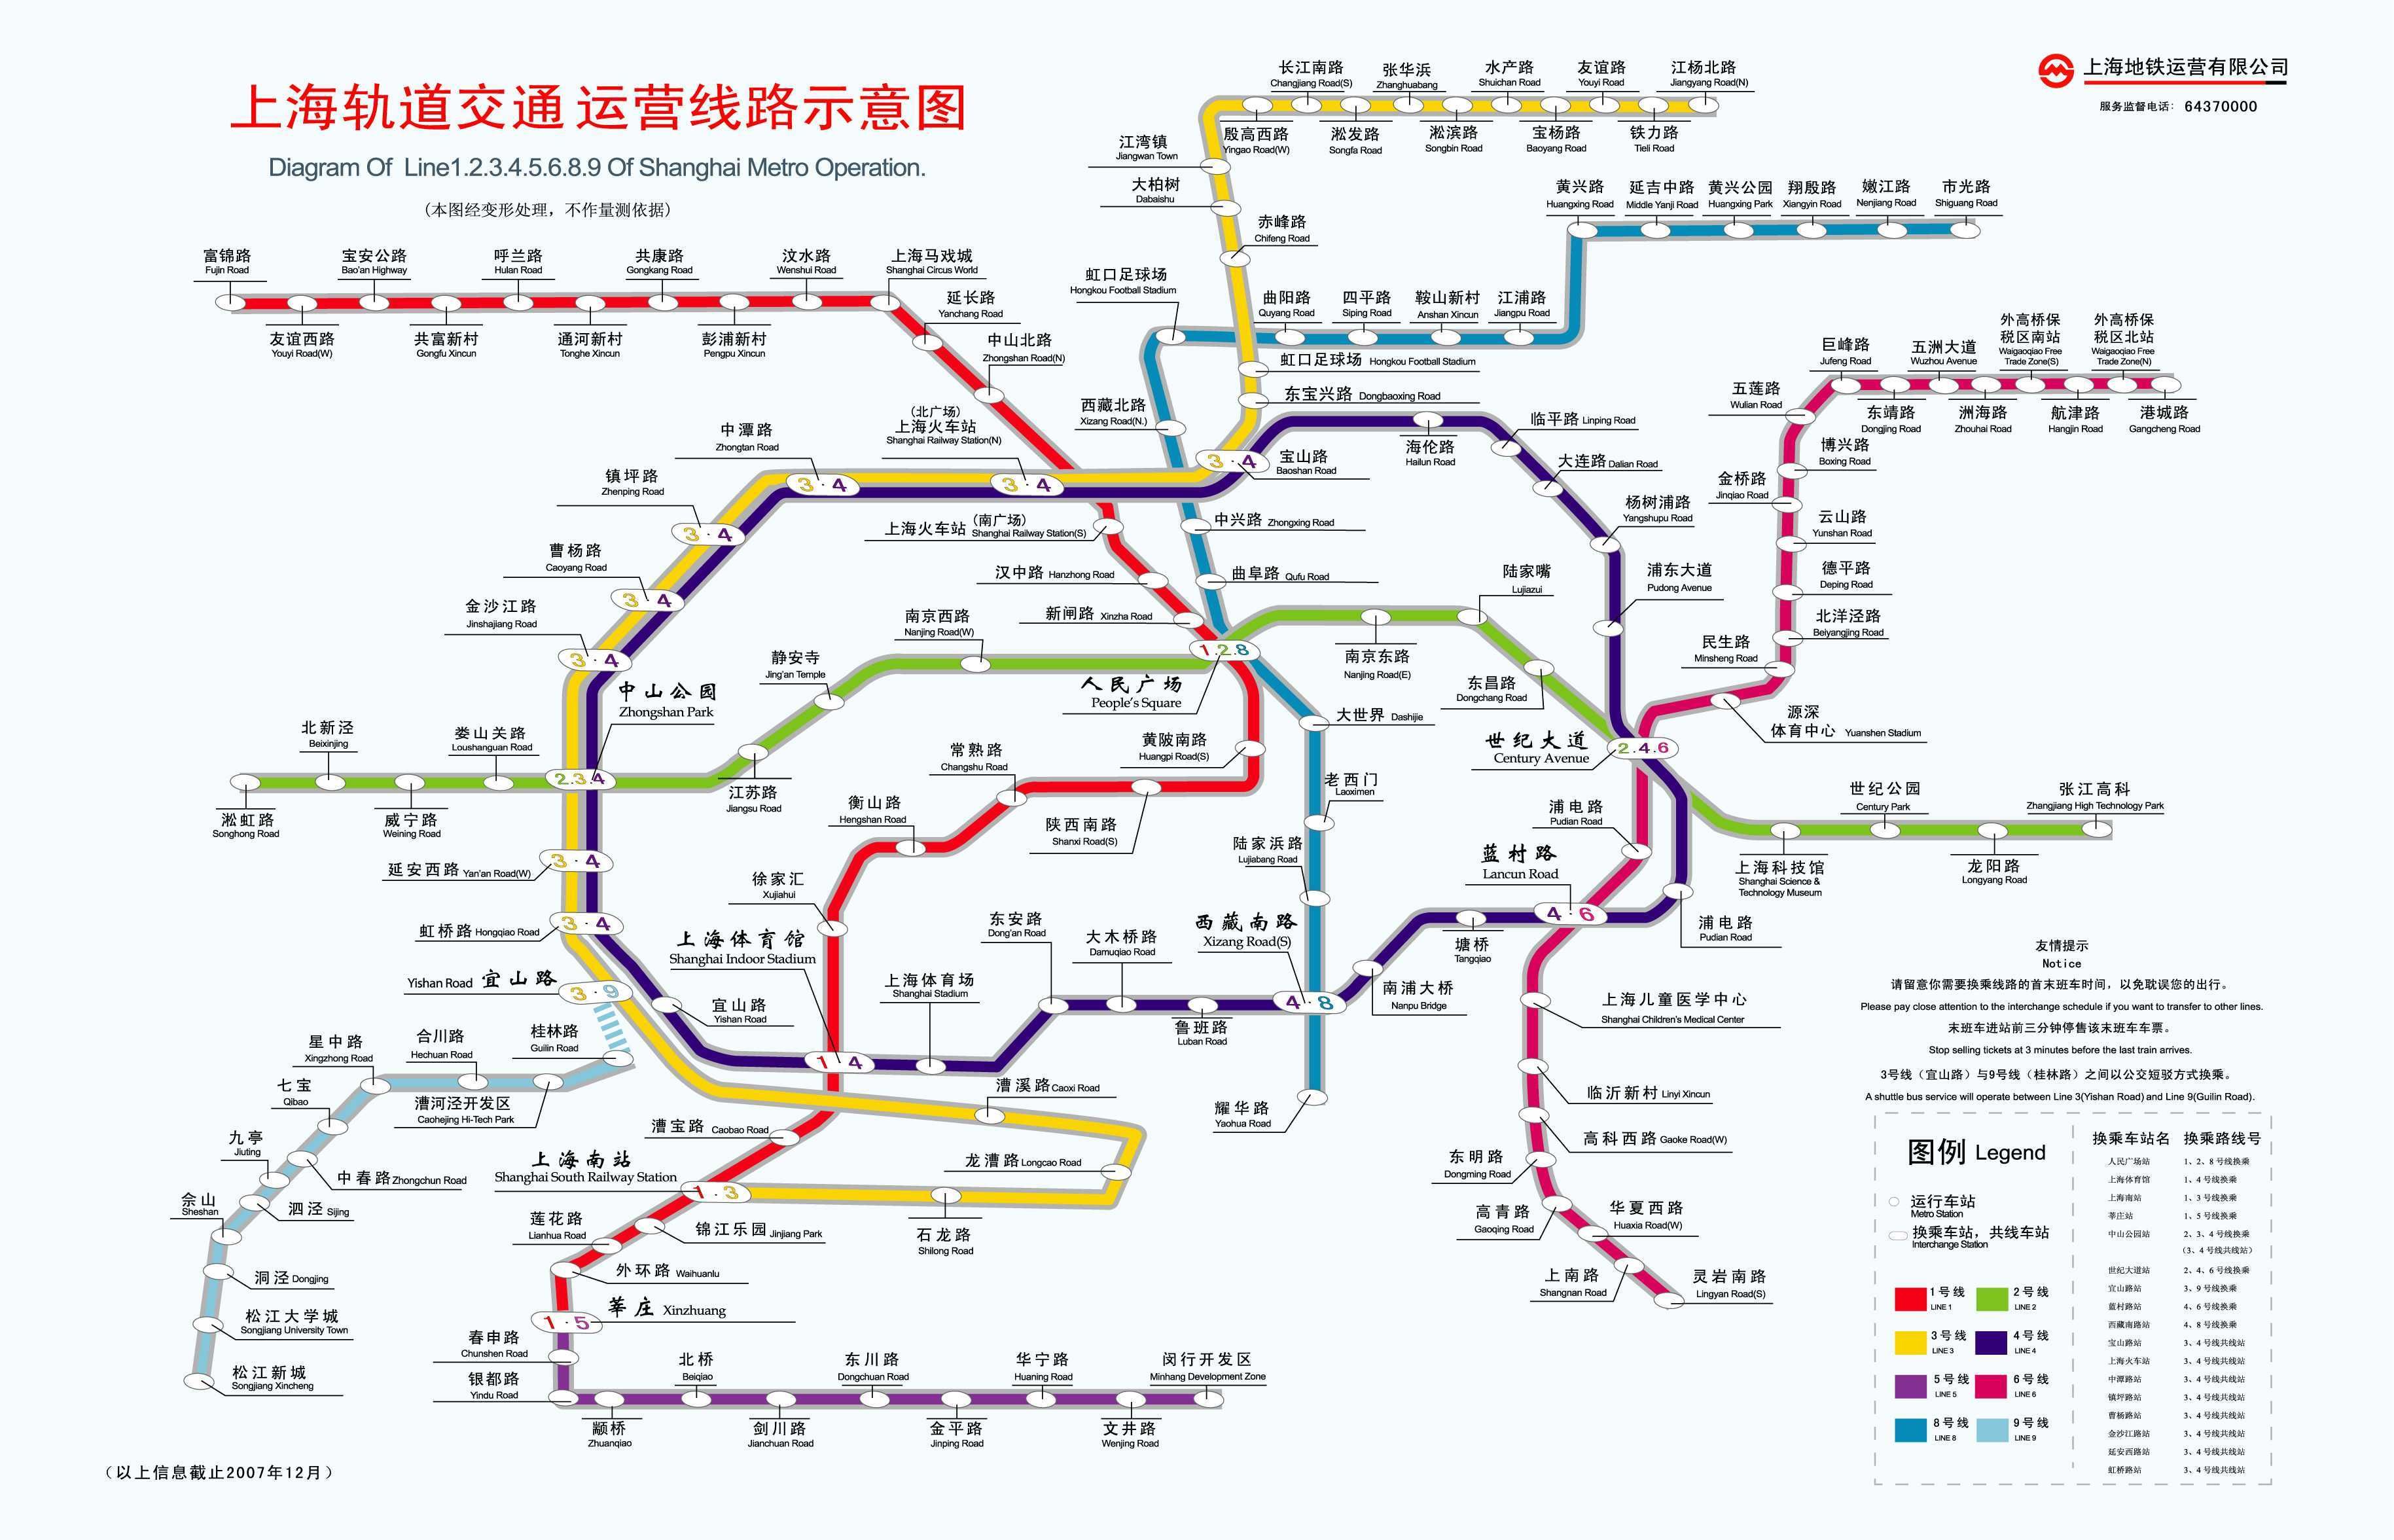 上海轨道交通规划-上海轨道交通15号线,上海轨道交通规划图,上海轨道交通19号线,上海轨道交通17号线